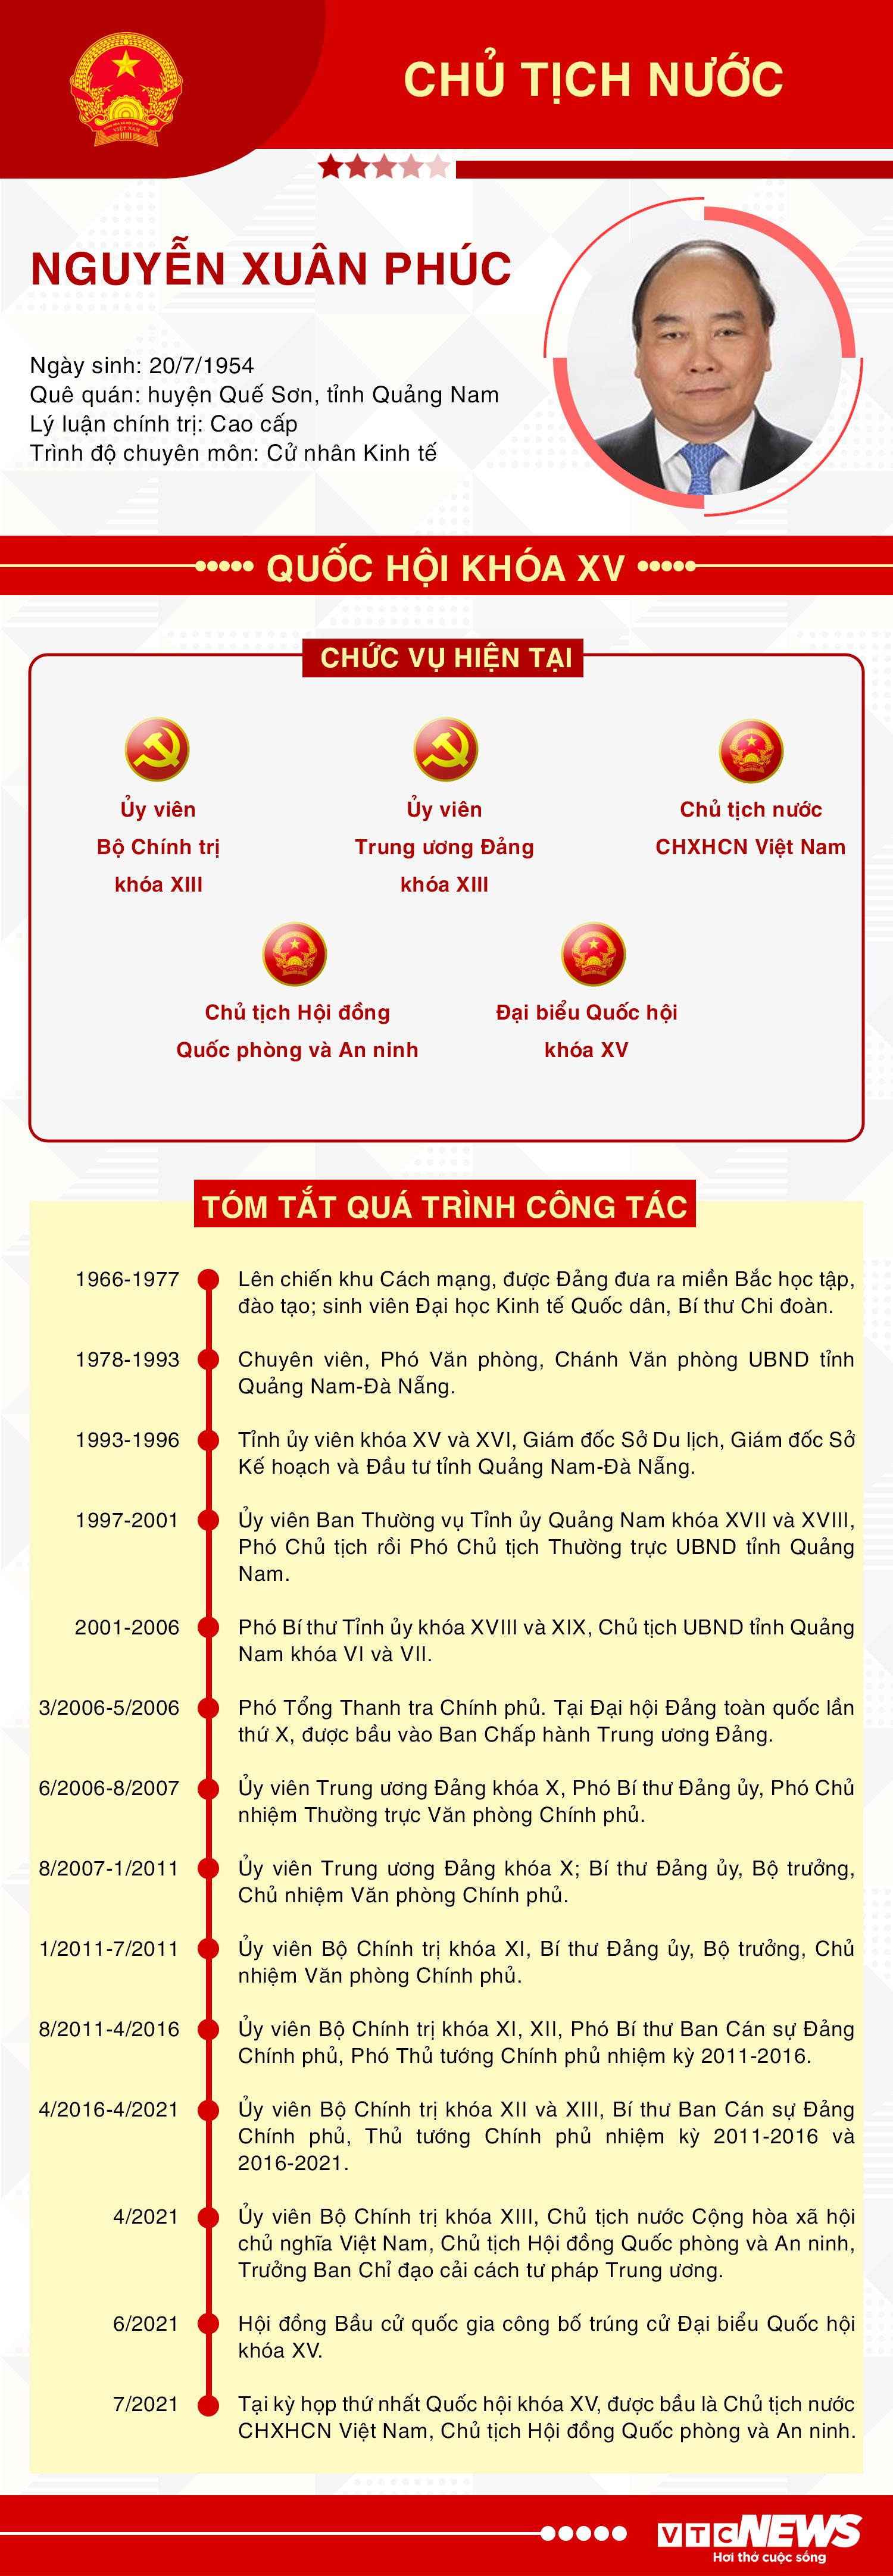 Infographic: Sự nghiệp Chủ tịch nước Nguyễn Xuân Phúc - 1